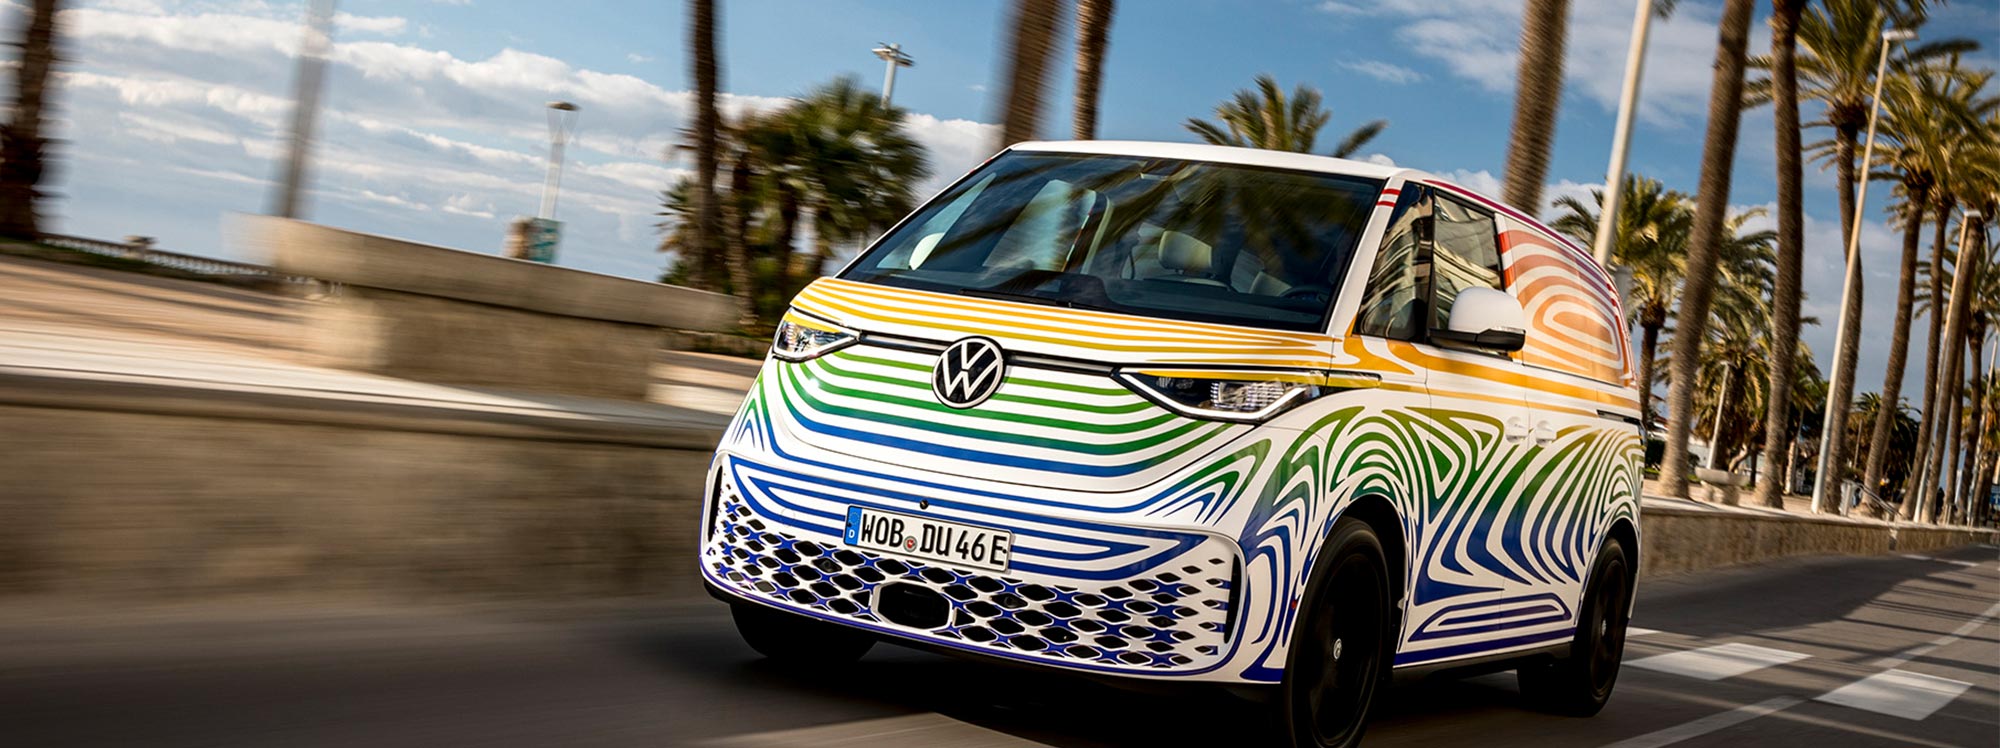 La nueva furgoneta de Volkswagen inspirada en un modelo clásico